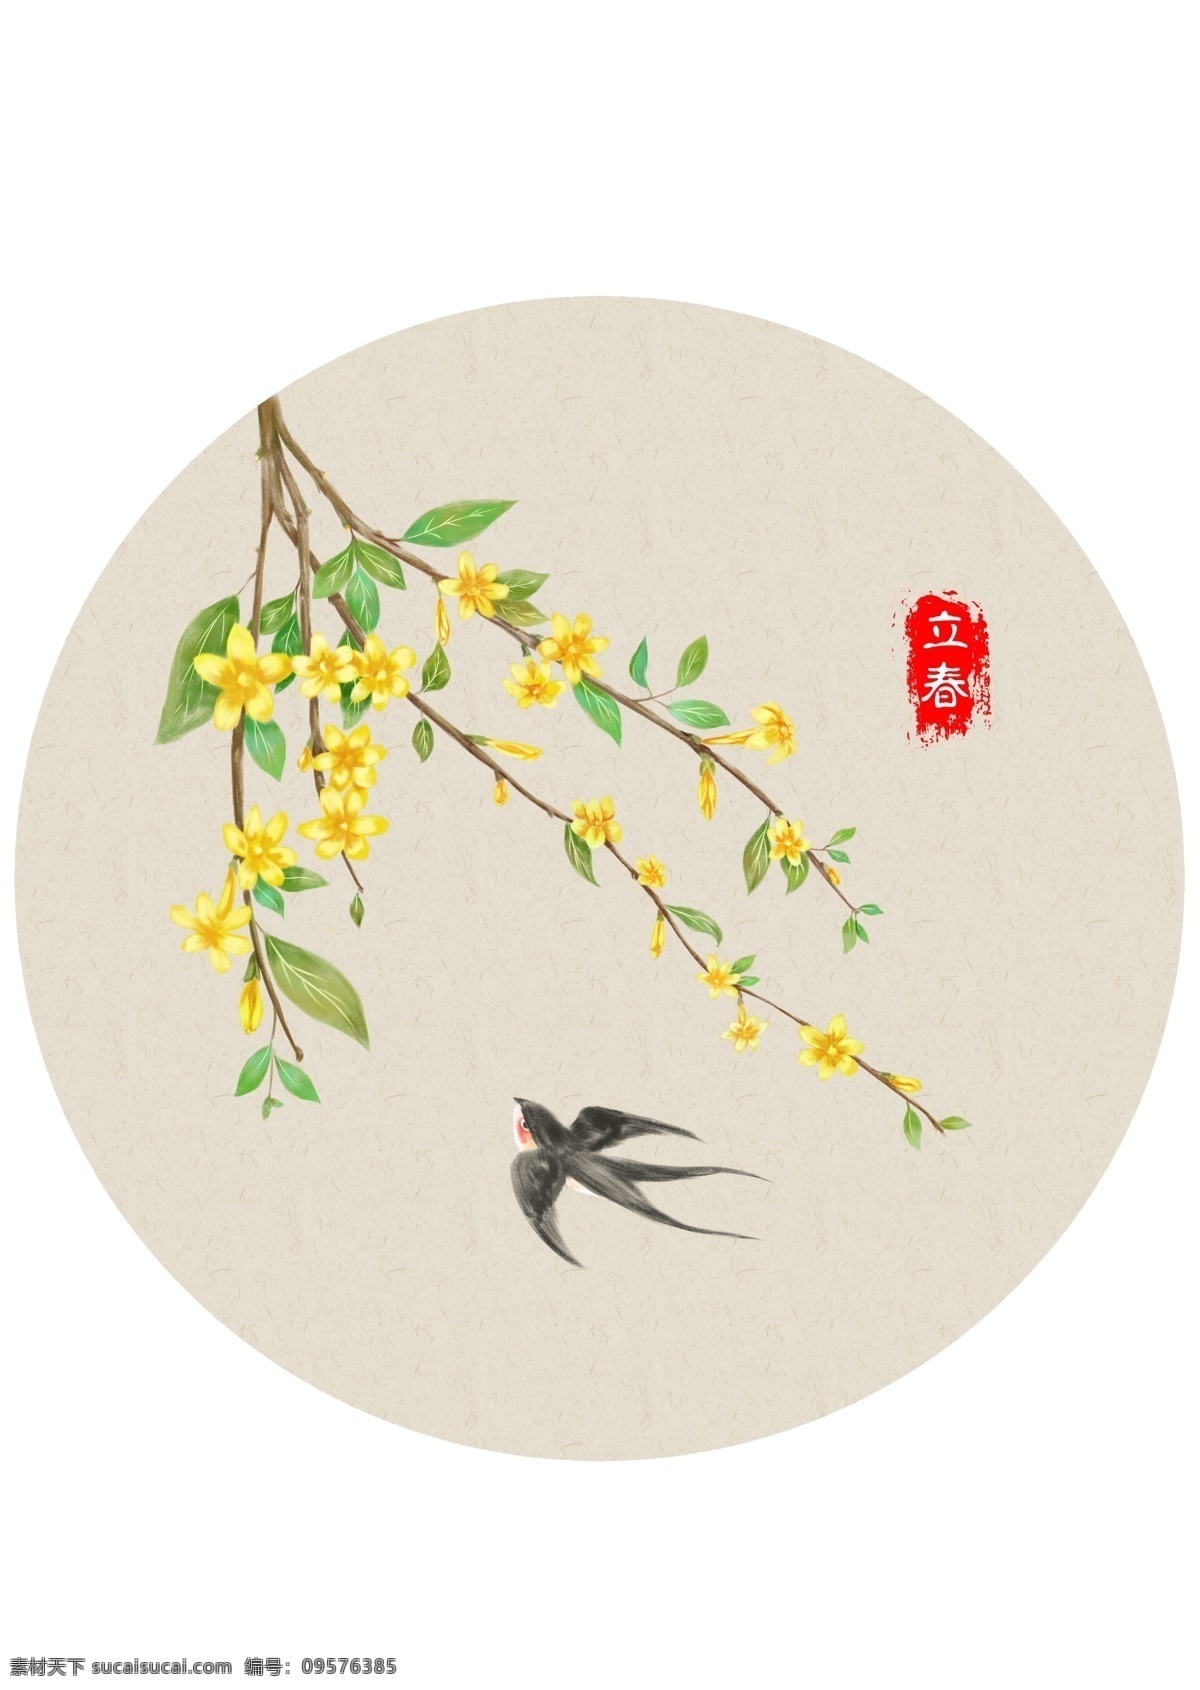 春天 燕子 黄花 圆墙画 壁 户外海报 文化艺术 传统文化